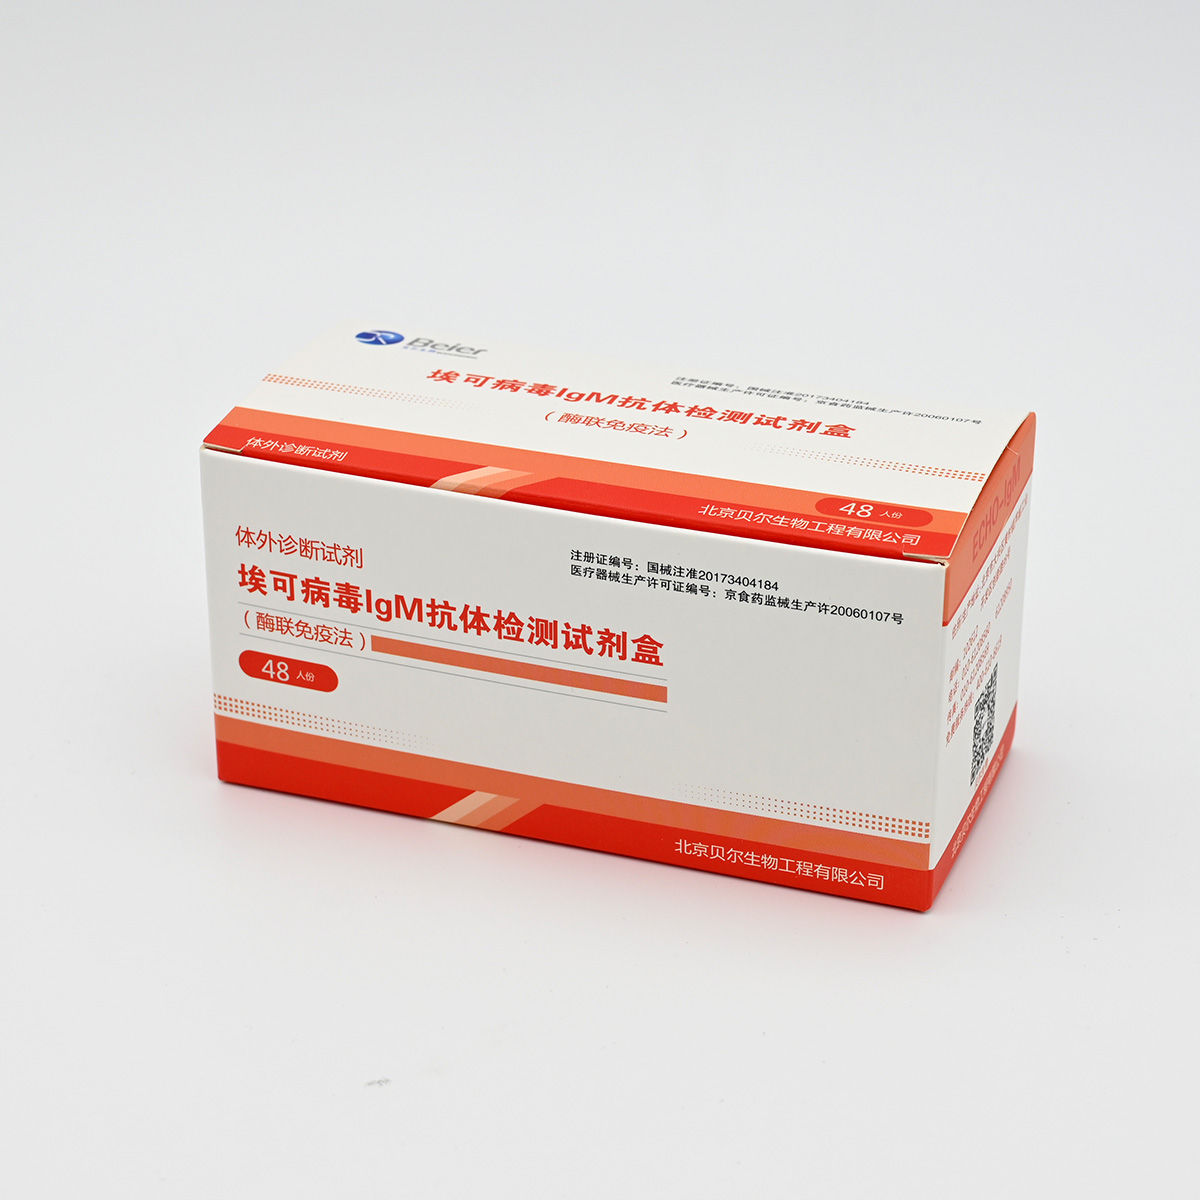 【贝尔】埃可病毒IgM抗体检测试剂盒(酶联免疫法)